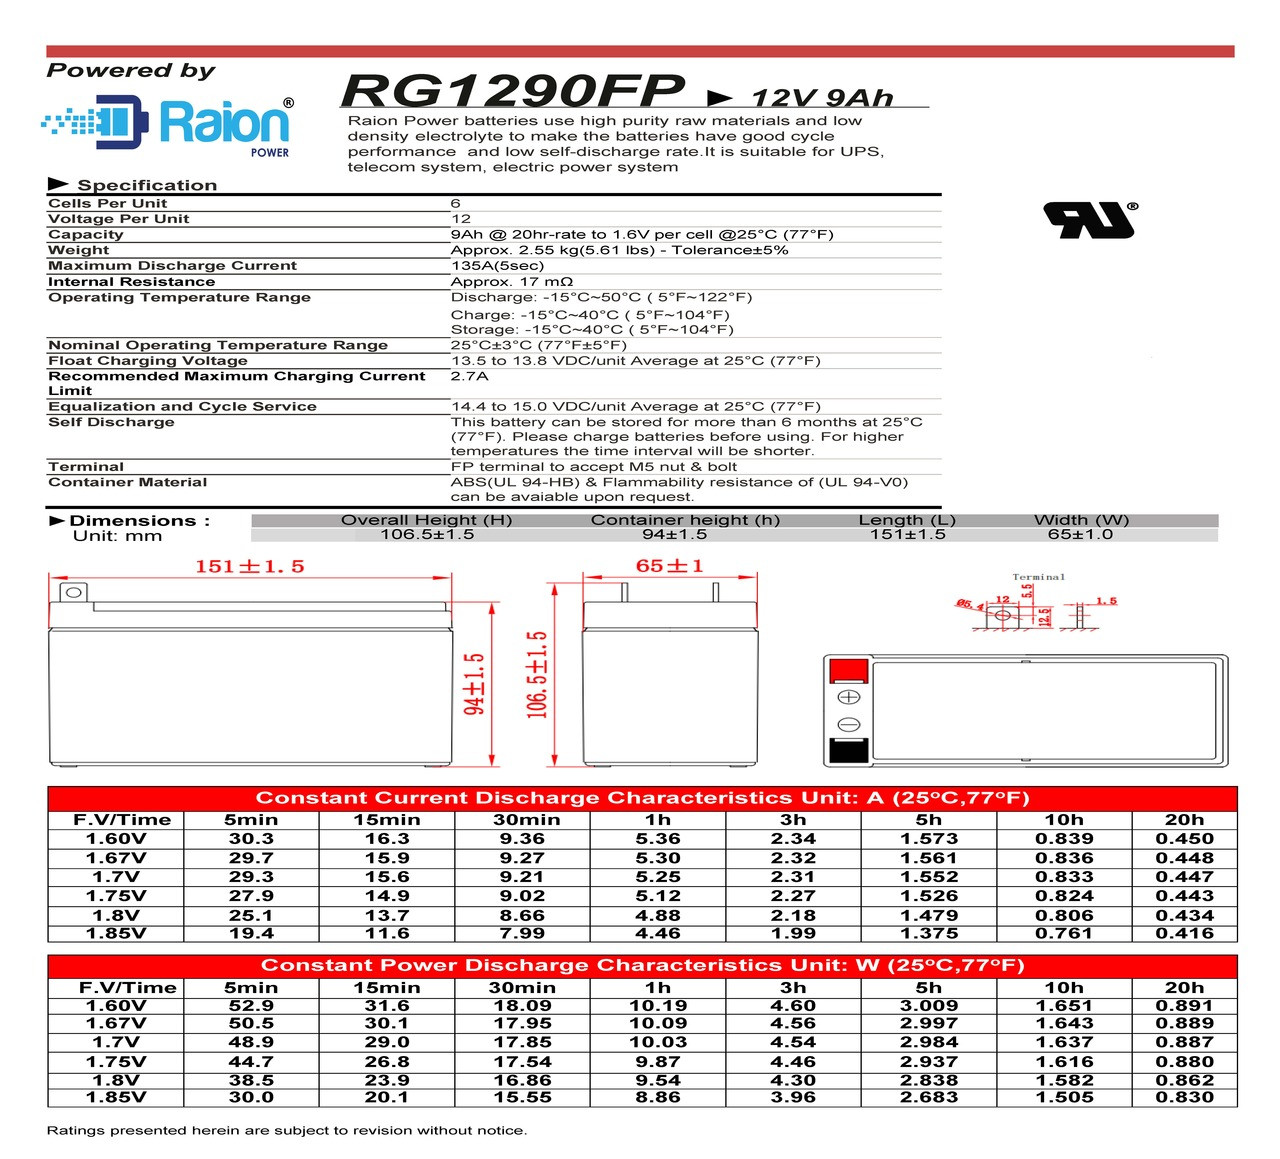 Raion Power 12V 9Ah Battery Data Sheet for Peak PKC0A0 300 Amp